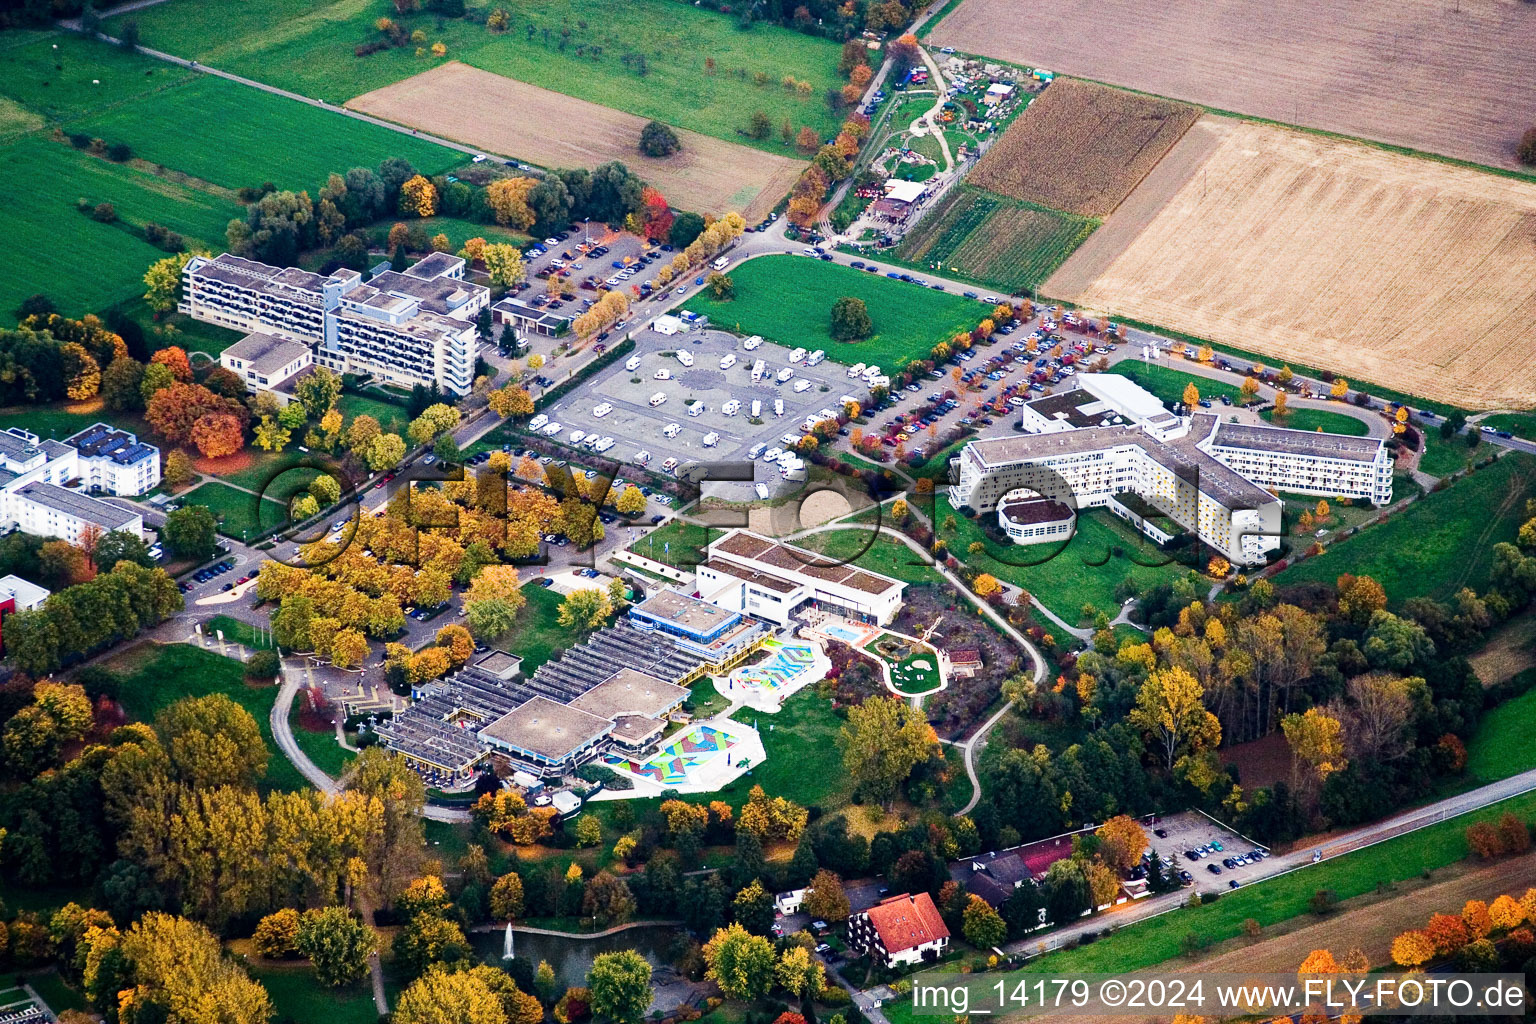 Vue aérienne de Clinique Reh Sigmund Weil et Thermarium à le quartier Bad Mingolsheim in Bad Schönborn dans le département Bade-Wurtemberg, Allemagne